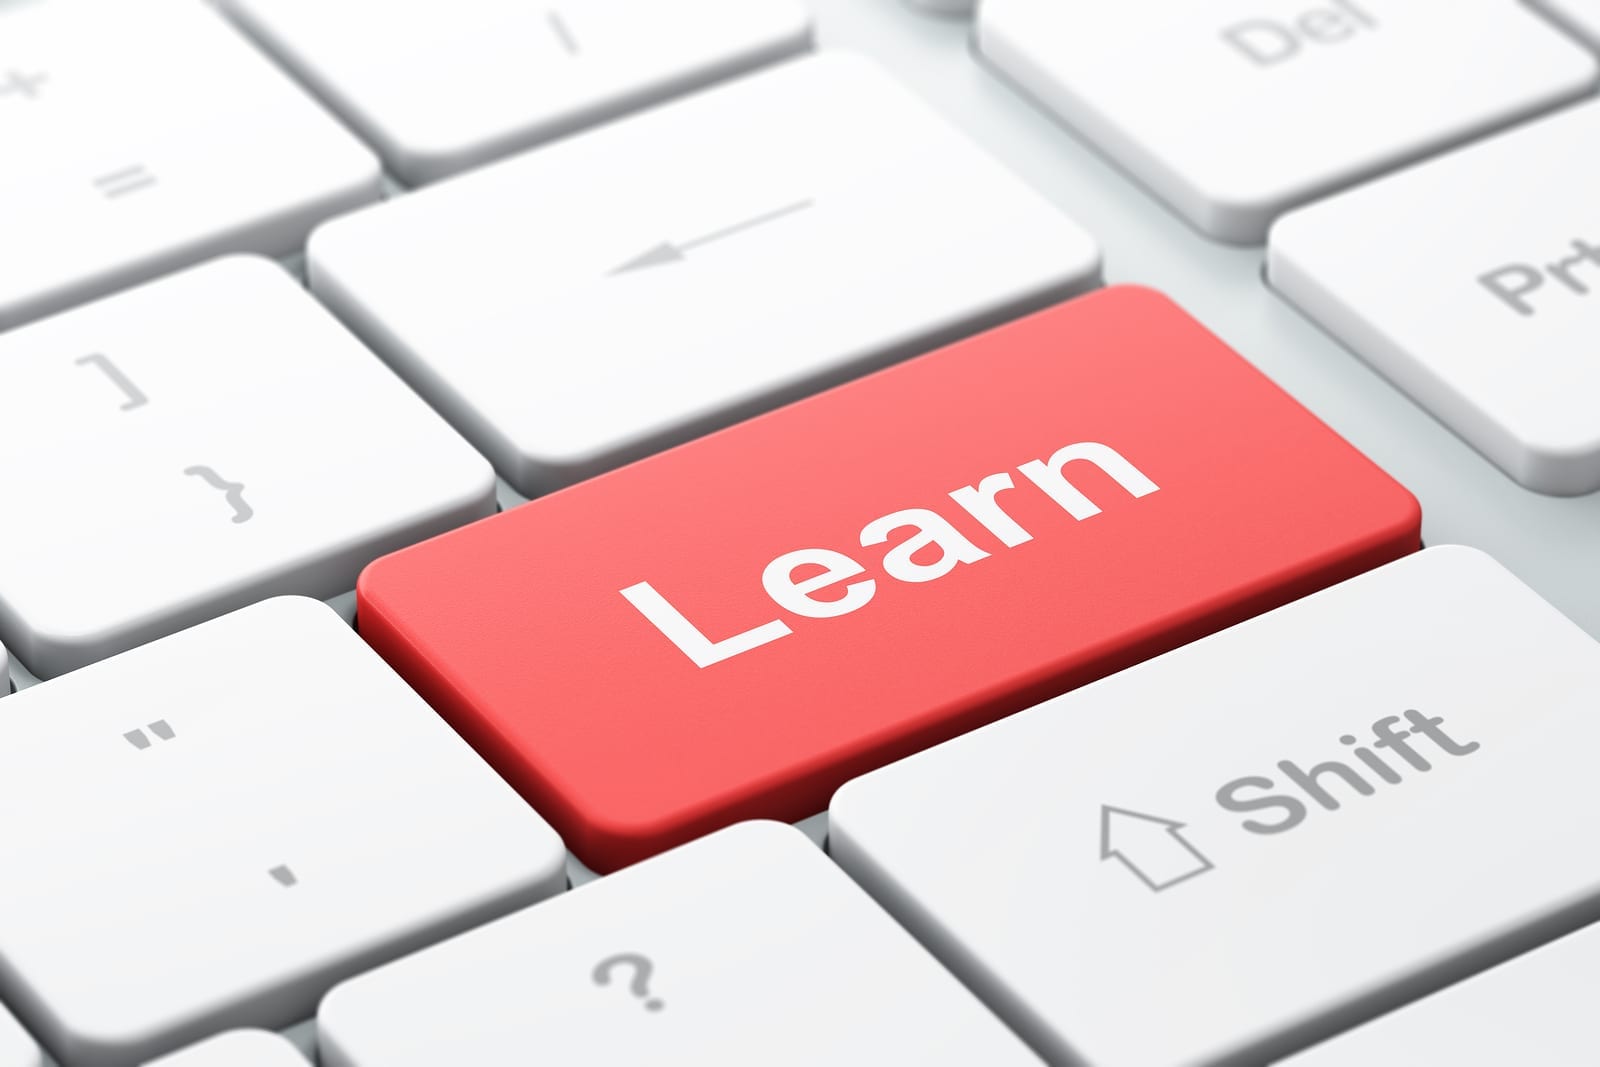 DigitalChalk: Develop Your Learning Management System Skills